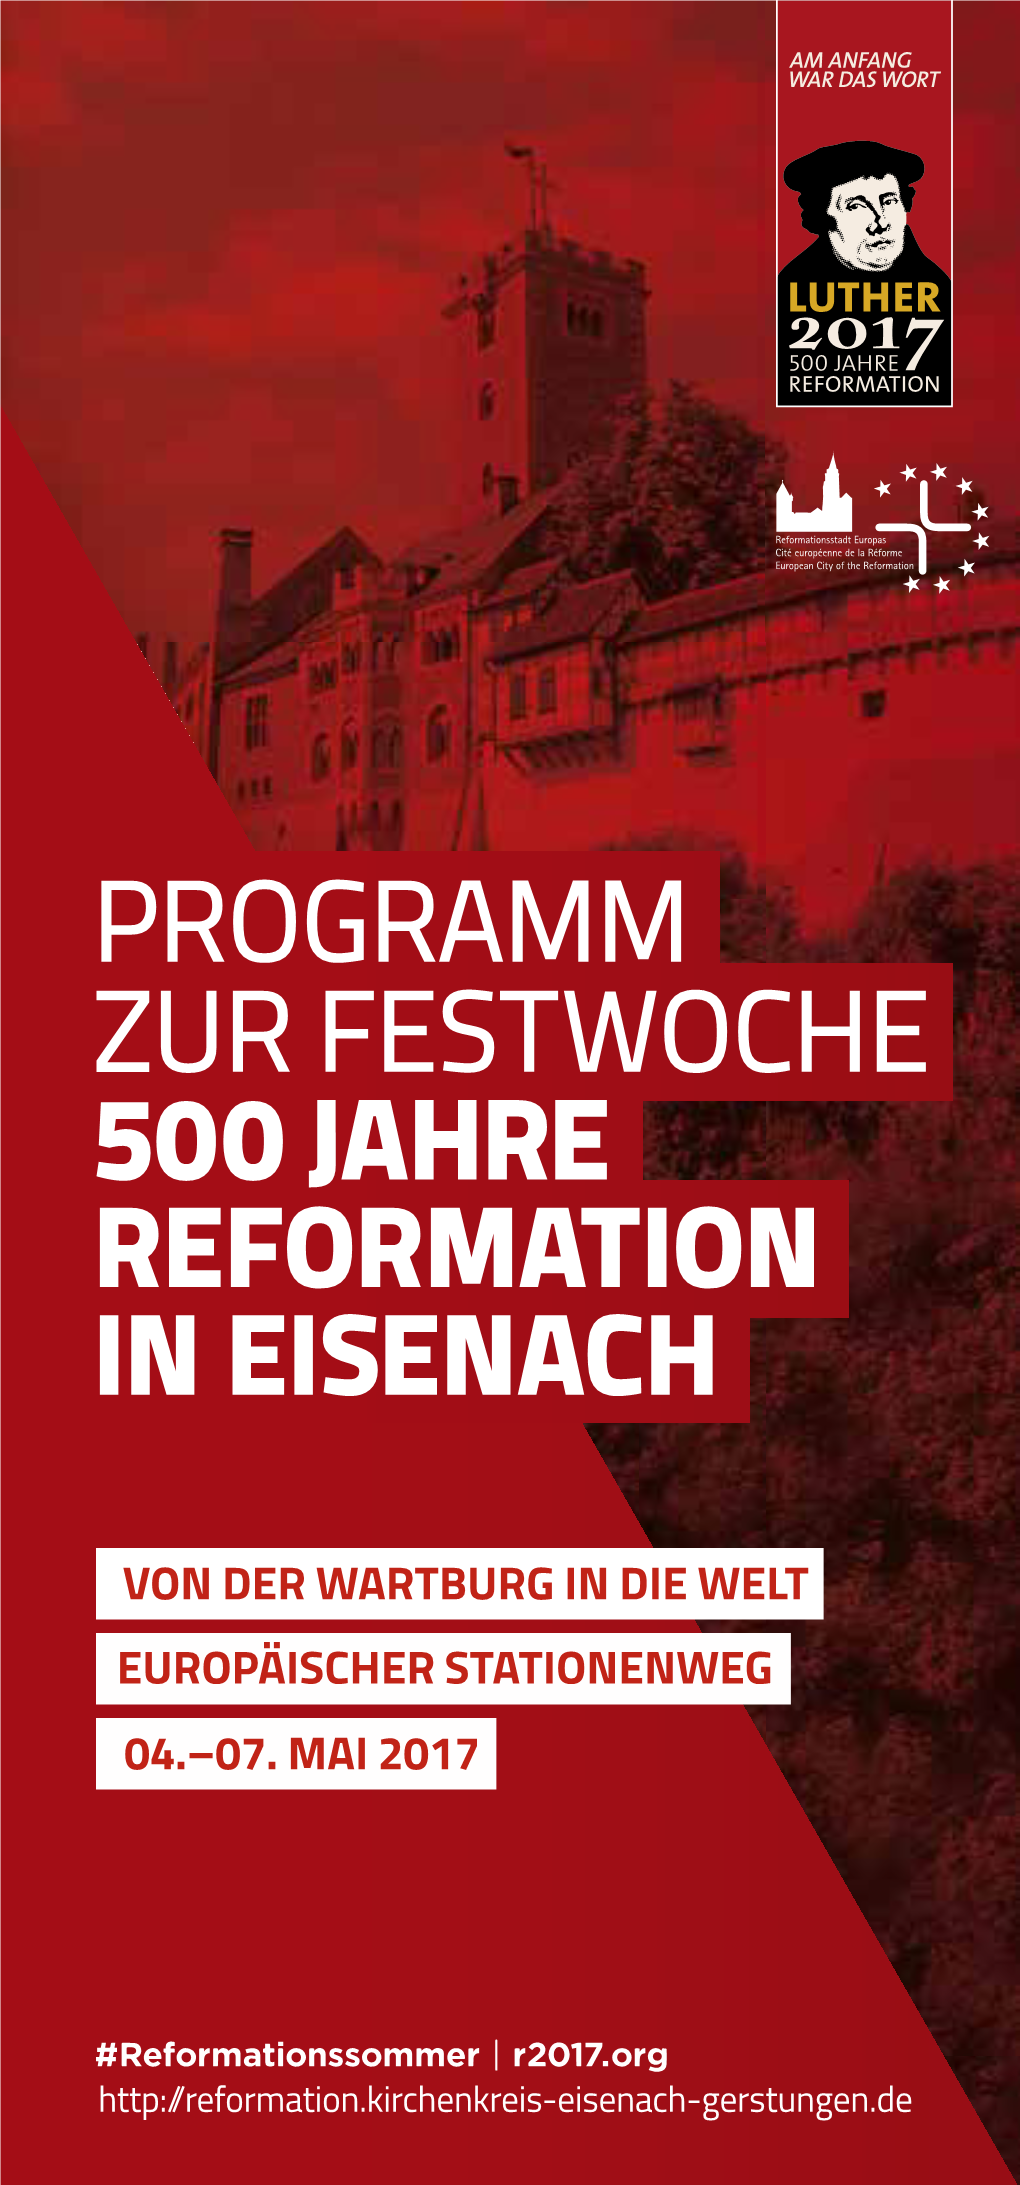 PROGRAMM ZUR FESTWOCHE 500 Jahre Reformation in Eisenach